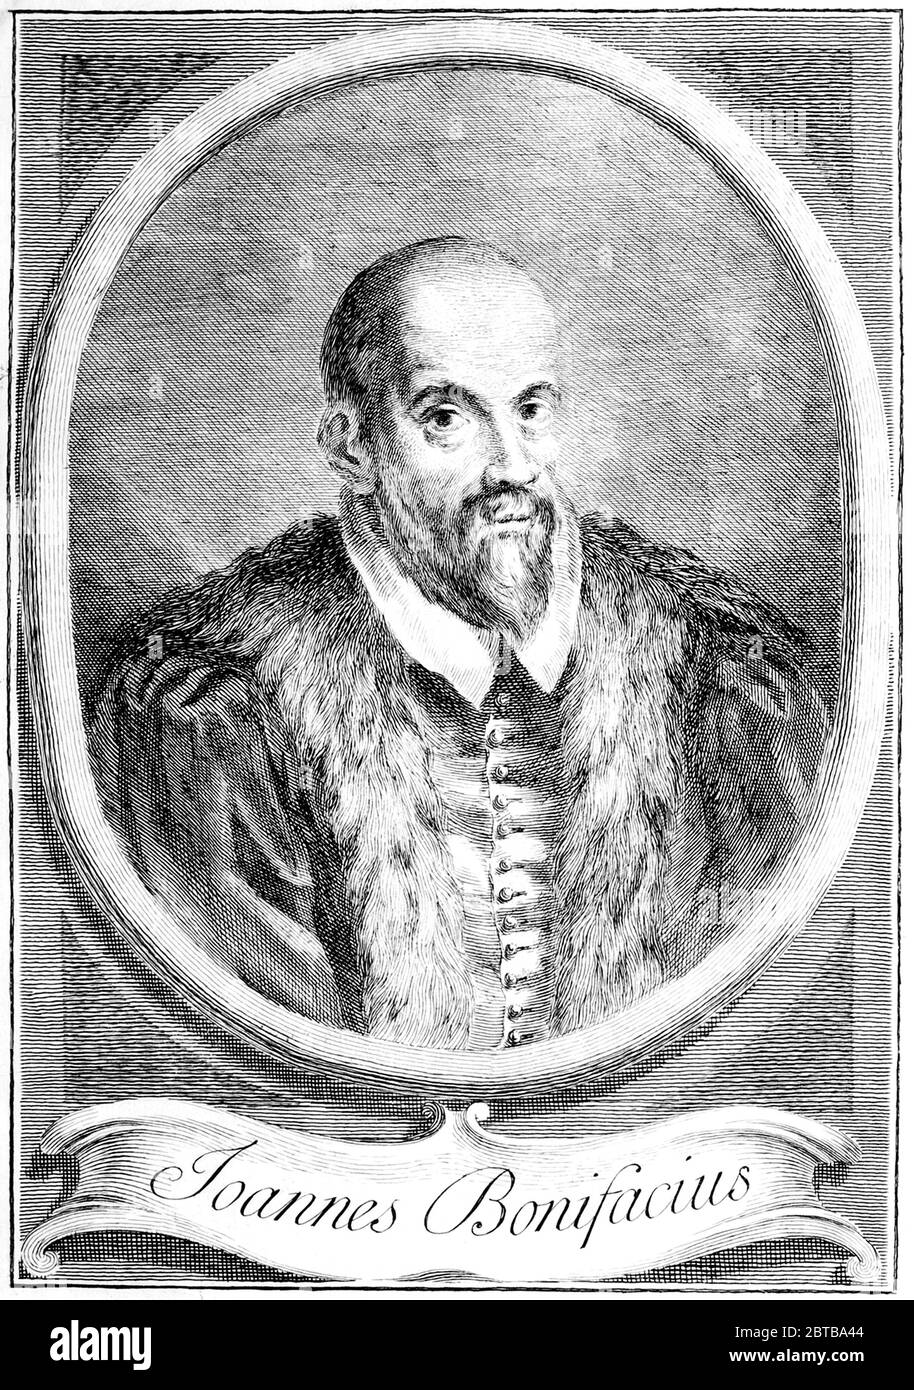 1600 c., ITALY : The italian writer , lawyer and historian GIOVANNI BONIFACIO ( 1547 - 1635 ). Portrait by unknown engraver, printed in 1744 . - STORIOGRAFO di TREVISO - SCRITTORE - LETTERATURA - LITERATURE - letterato - GIURISTA - incisione - portrait - ritratto - incisione - engraving- beard - barba --- Archivio GBB Stock Photo